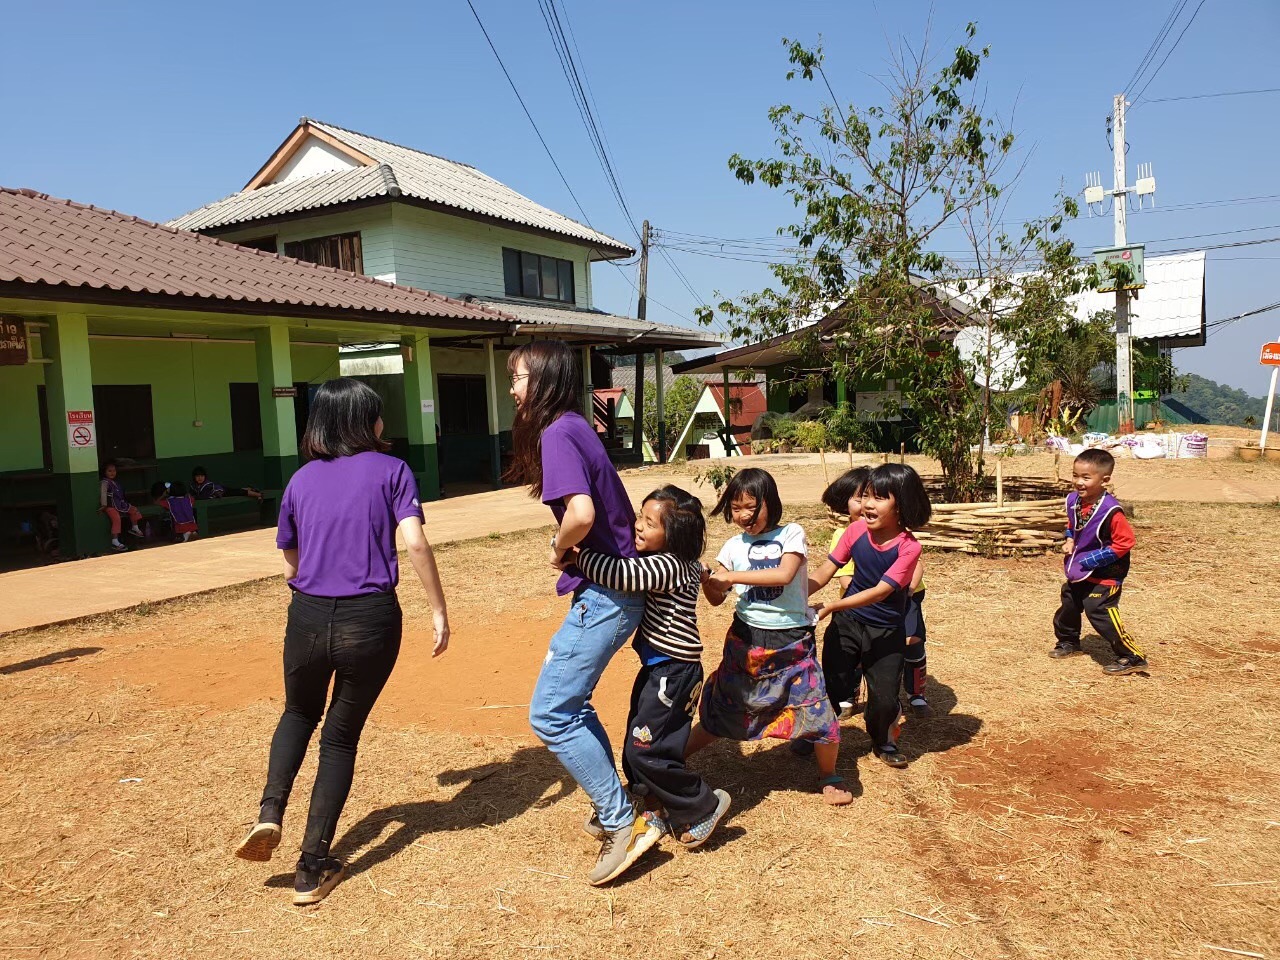 到泰語學校帶著孩子們玩老鷹抓小雞促進感情 。李文瑜(左) 李怡潔(右)